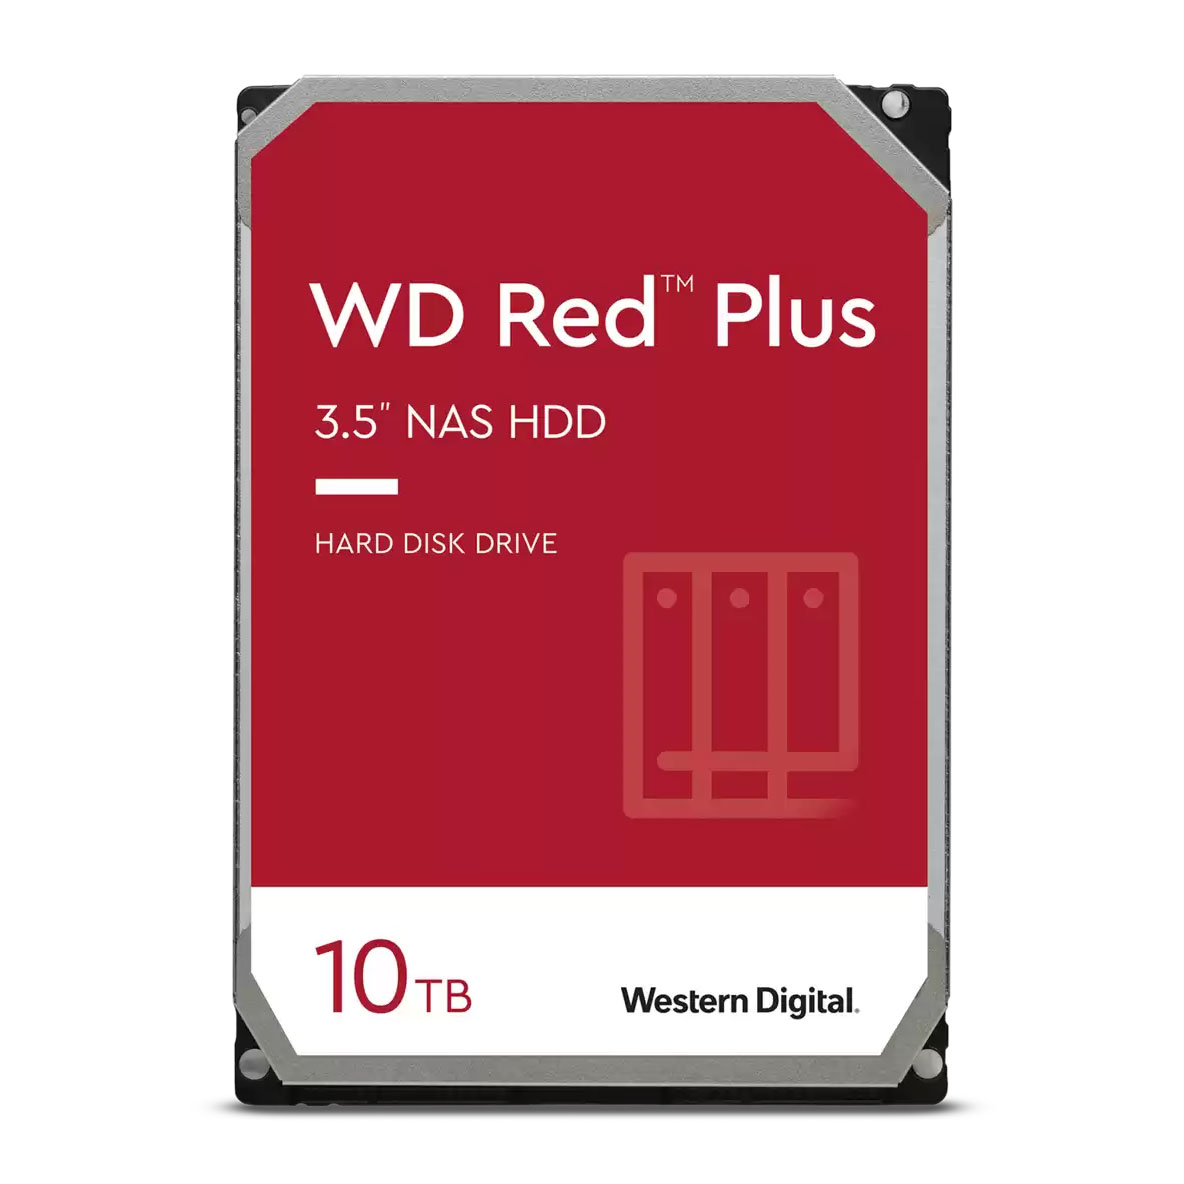 WD Red Plus 10TB NAS 3.5" SATA HDD/Hard Drive 7200rpm LN114952